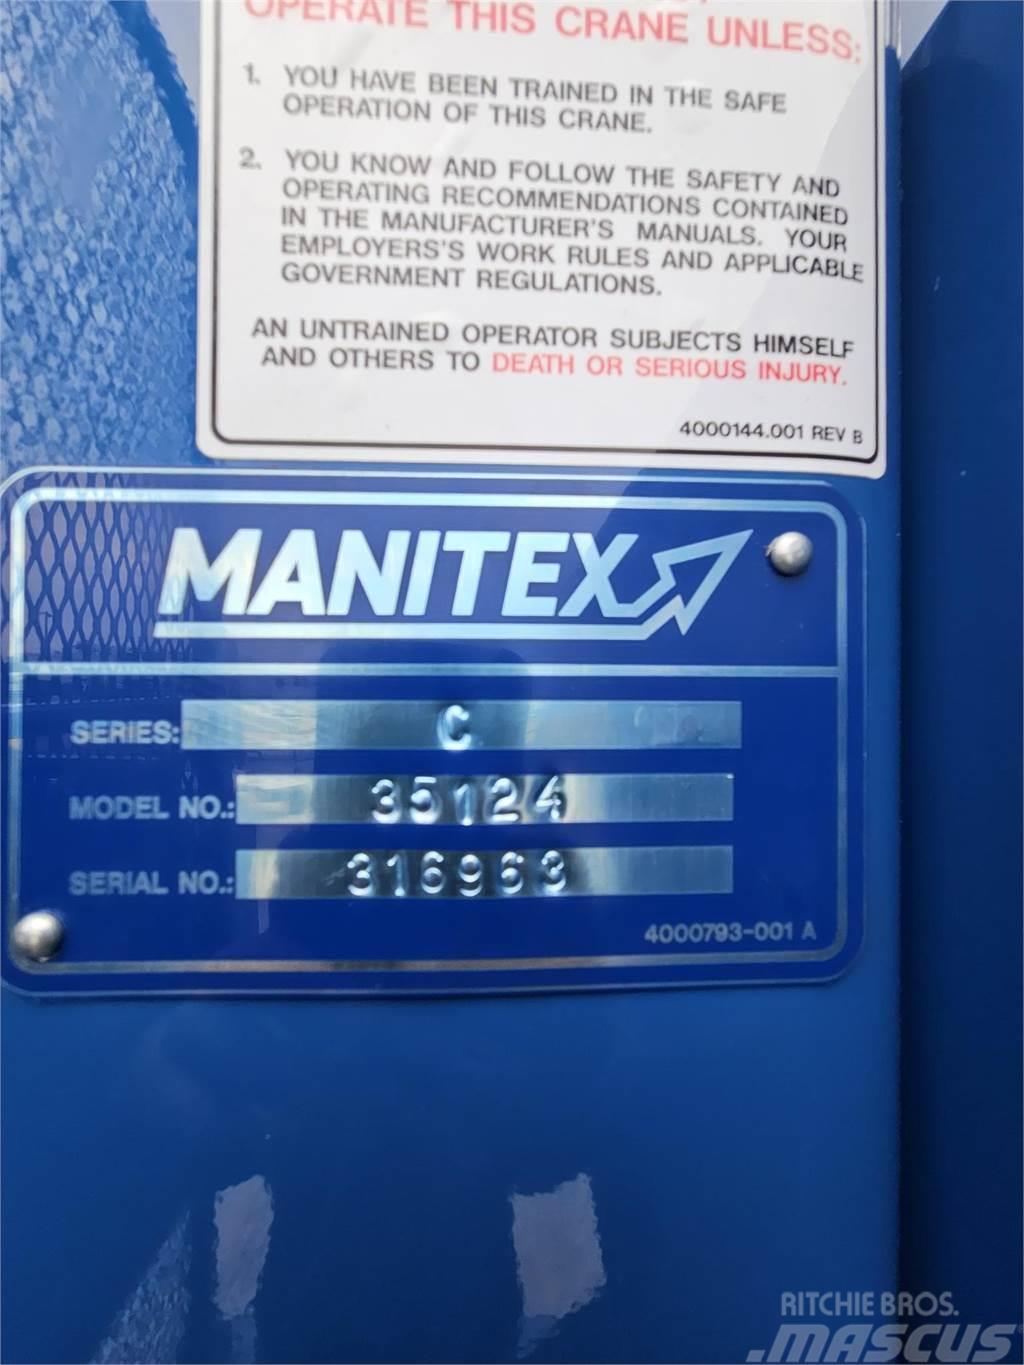 Manitex 35124C Lastbil med kran